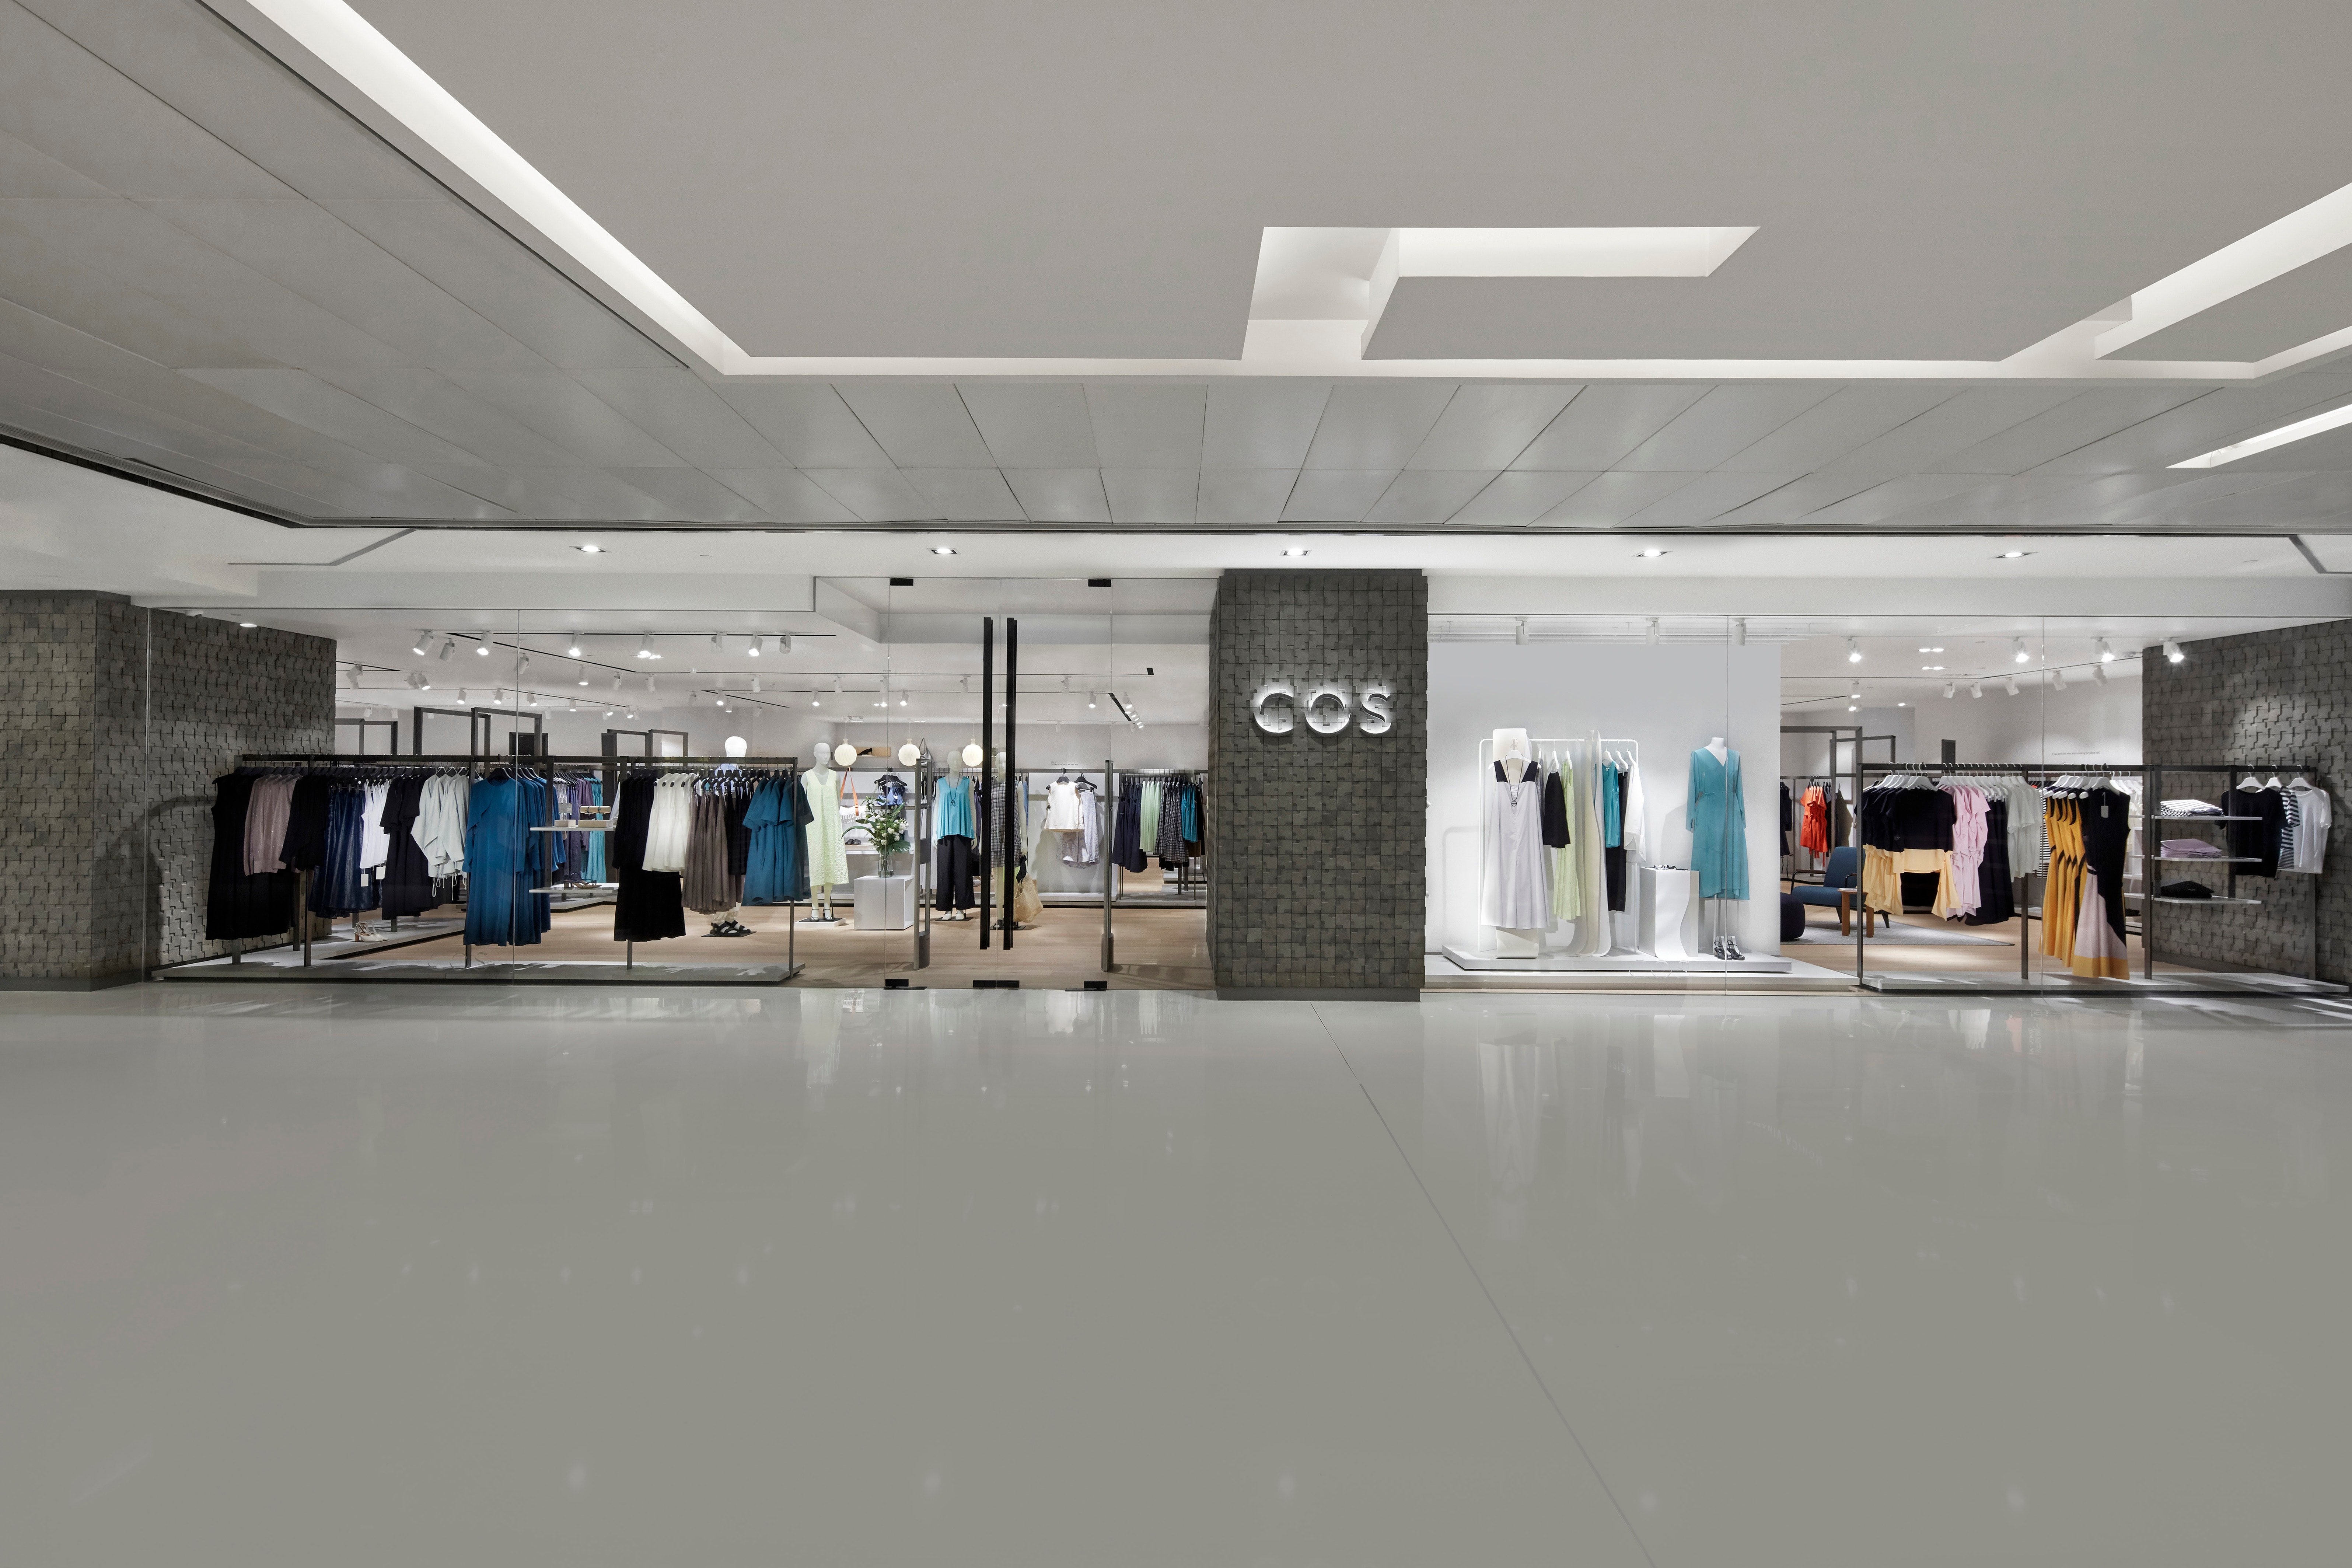 COS 全新香港專門店正式登陸沙田區